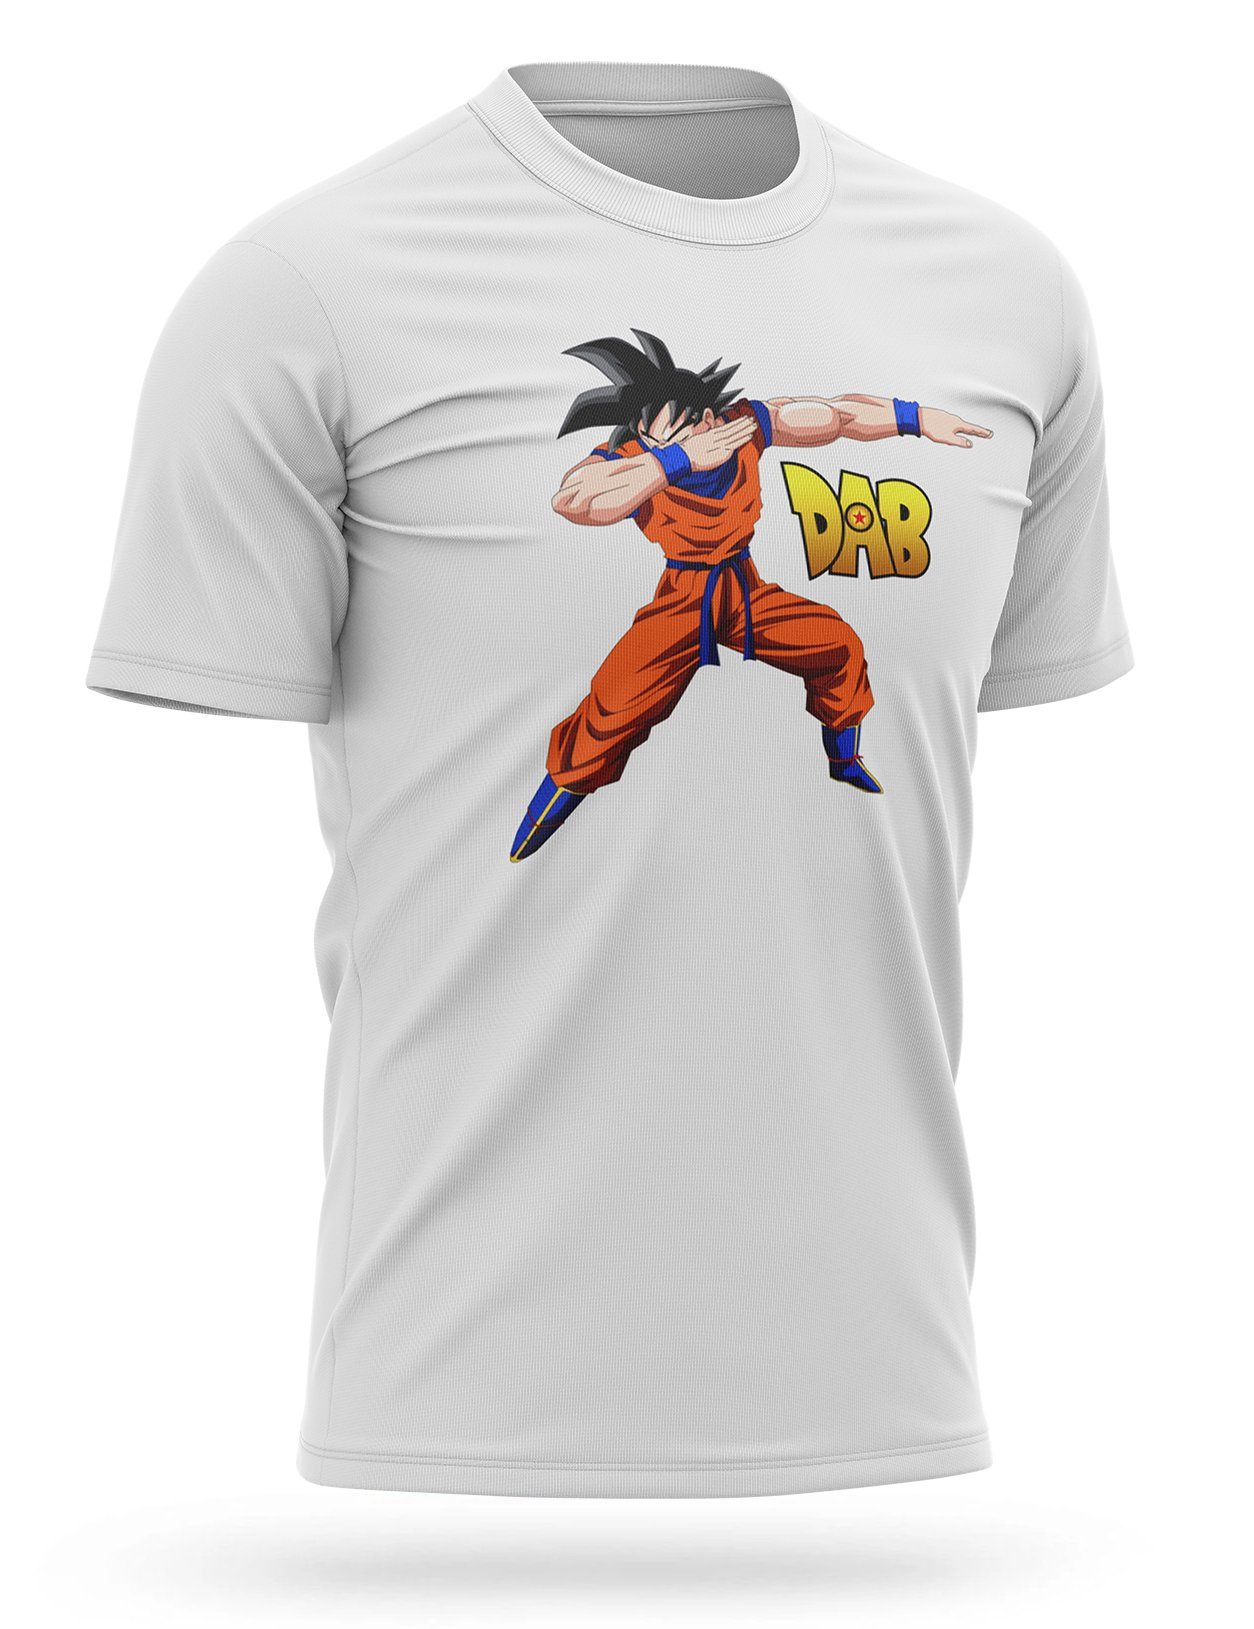 T Shirt Goku